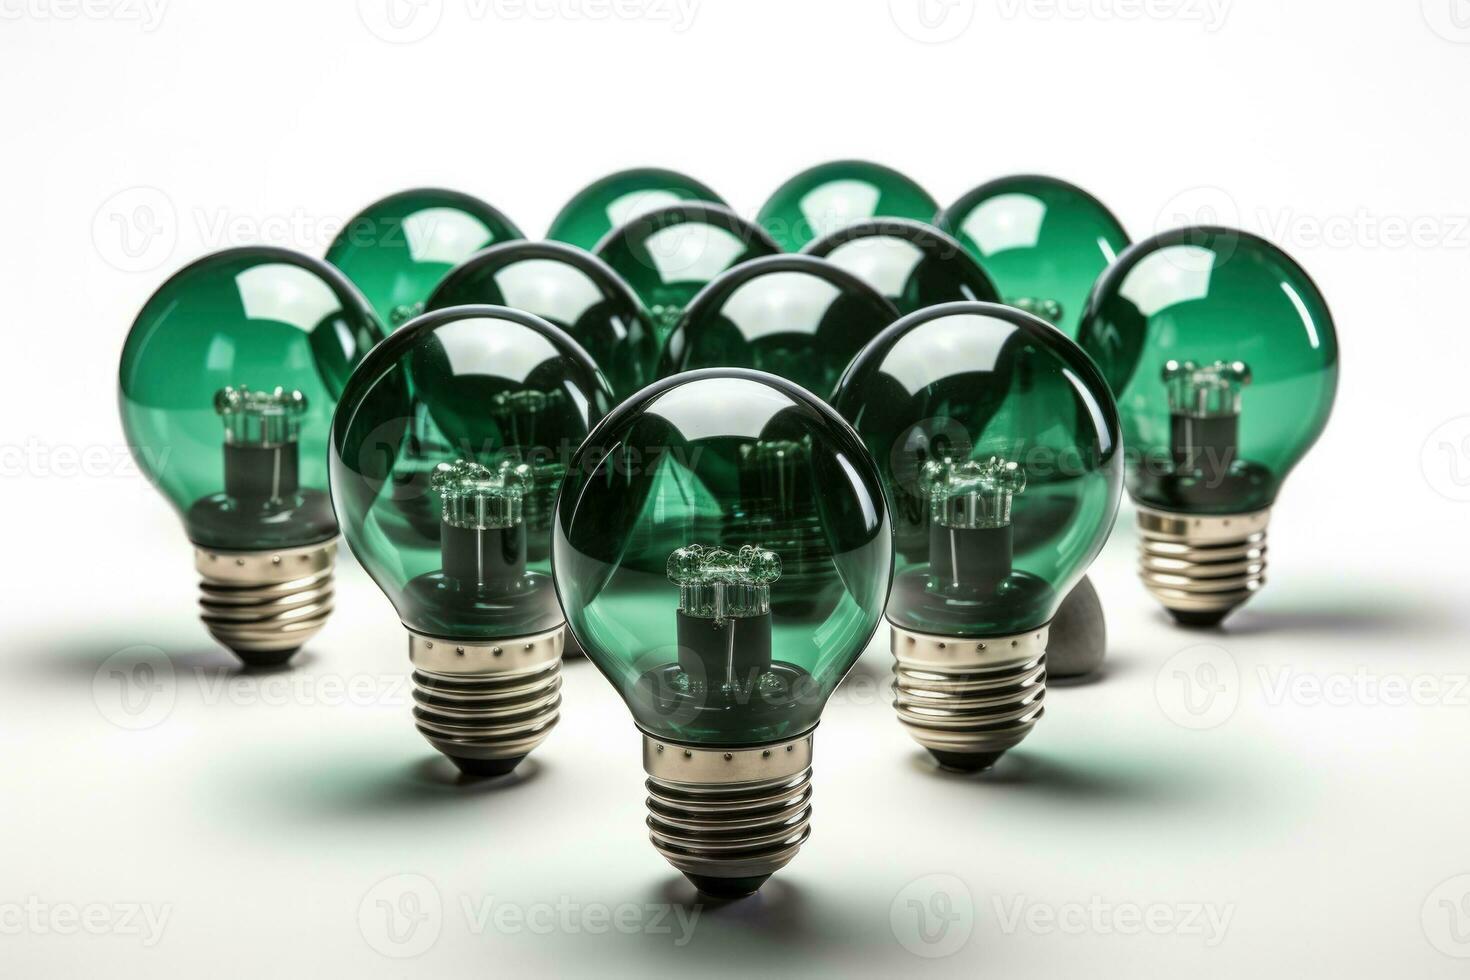 LED light bulbs symbolizing energy efficiency isolated on a white background photo